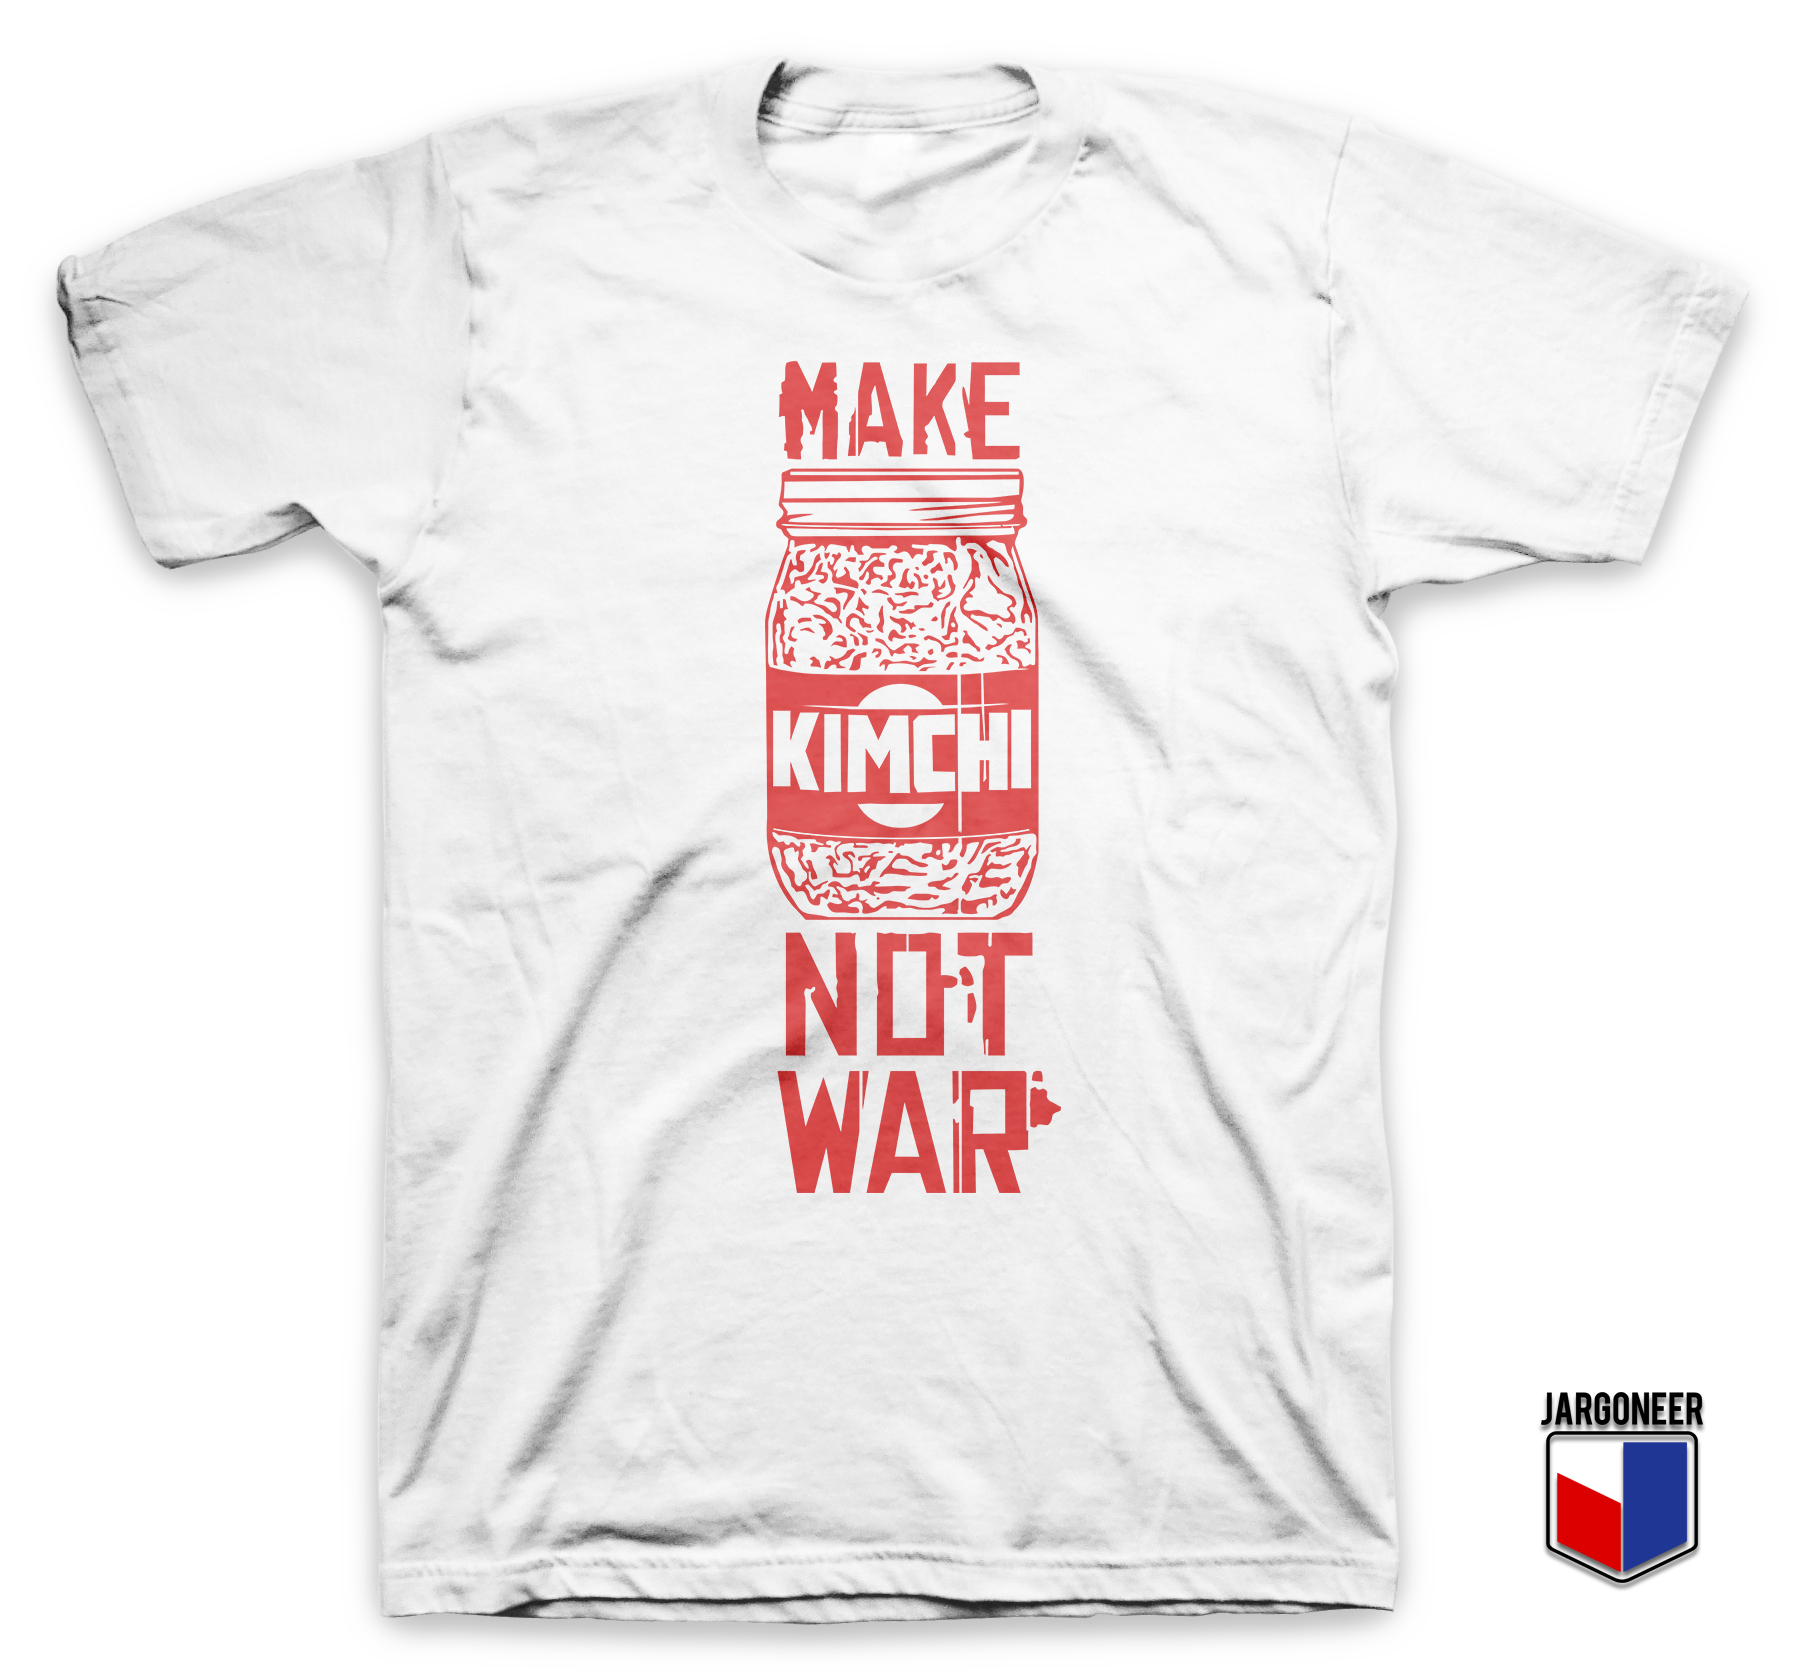 Make Kimchi Not War - Shop Unique Graphic Cool Shirt Designs